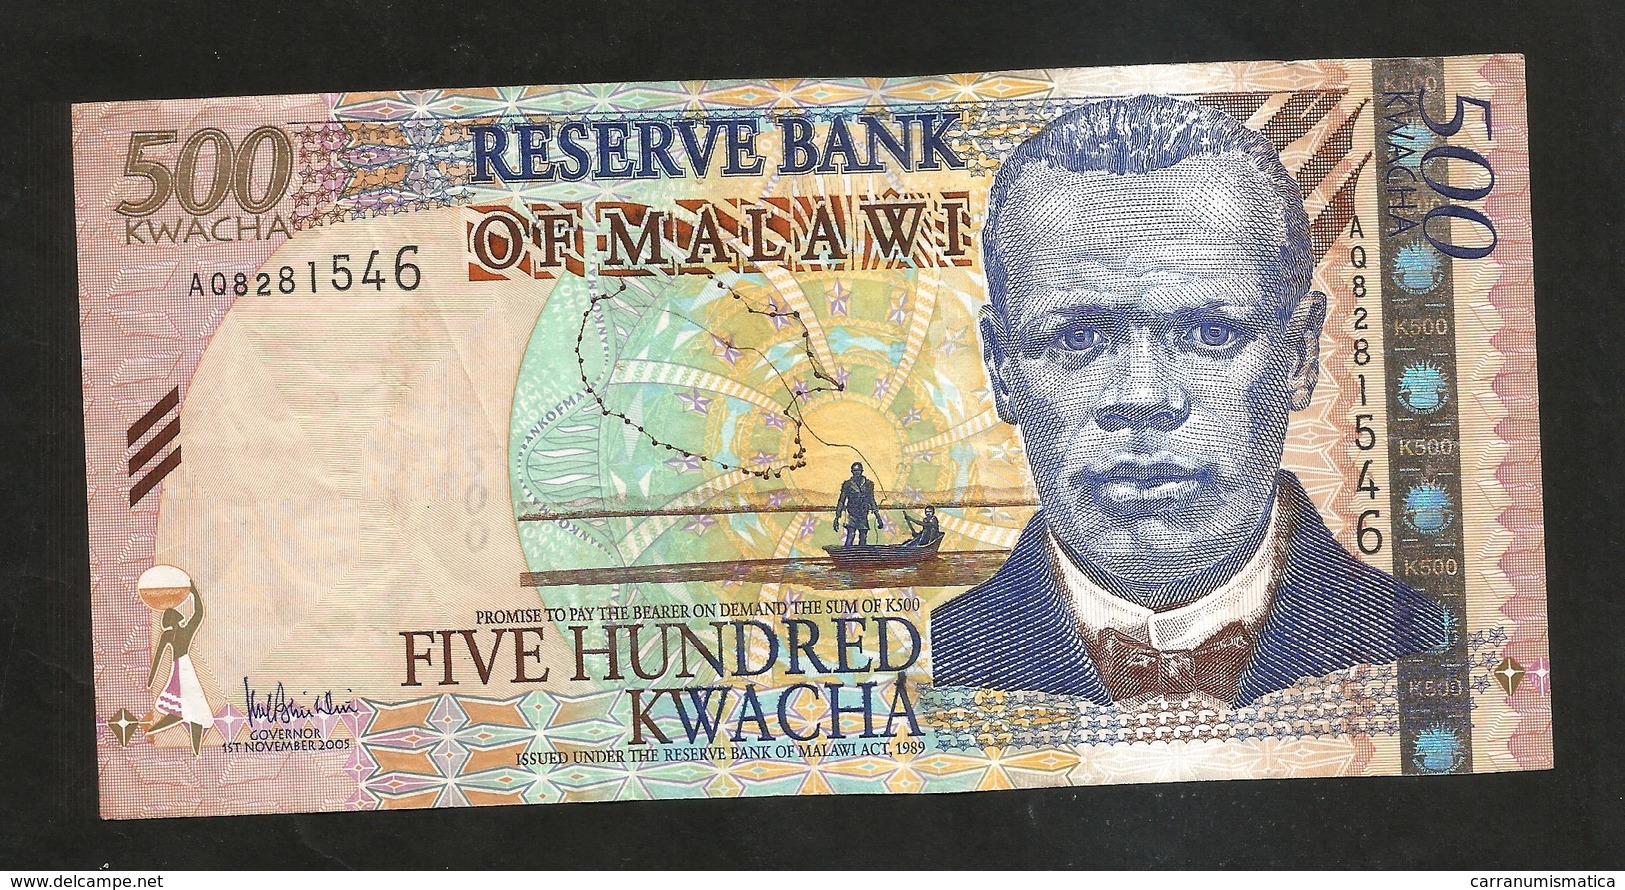 MALAWI - RESERVE BANK Of MALAWI - 500 KWACHA (2005) - Malawi